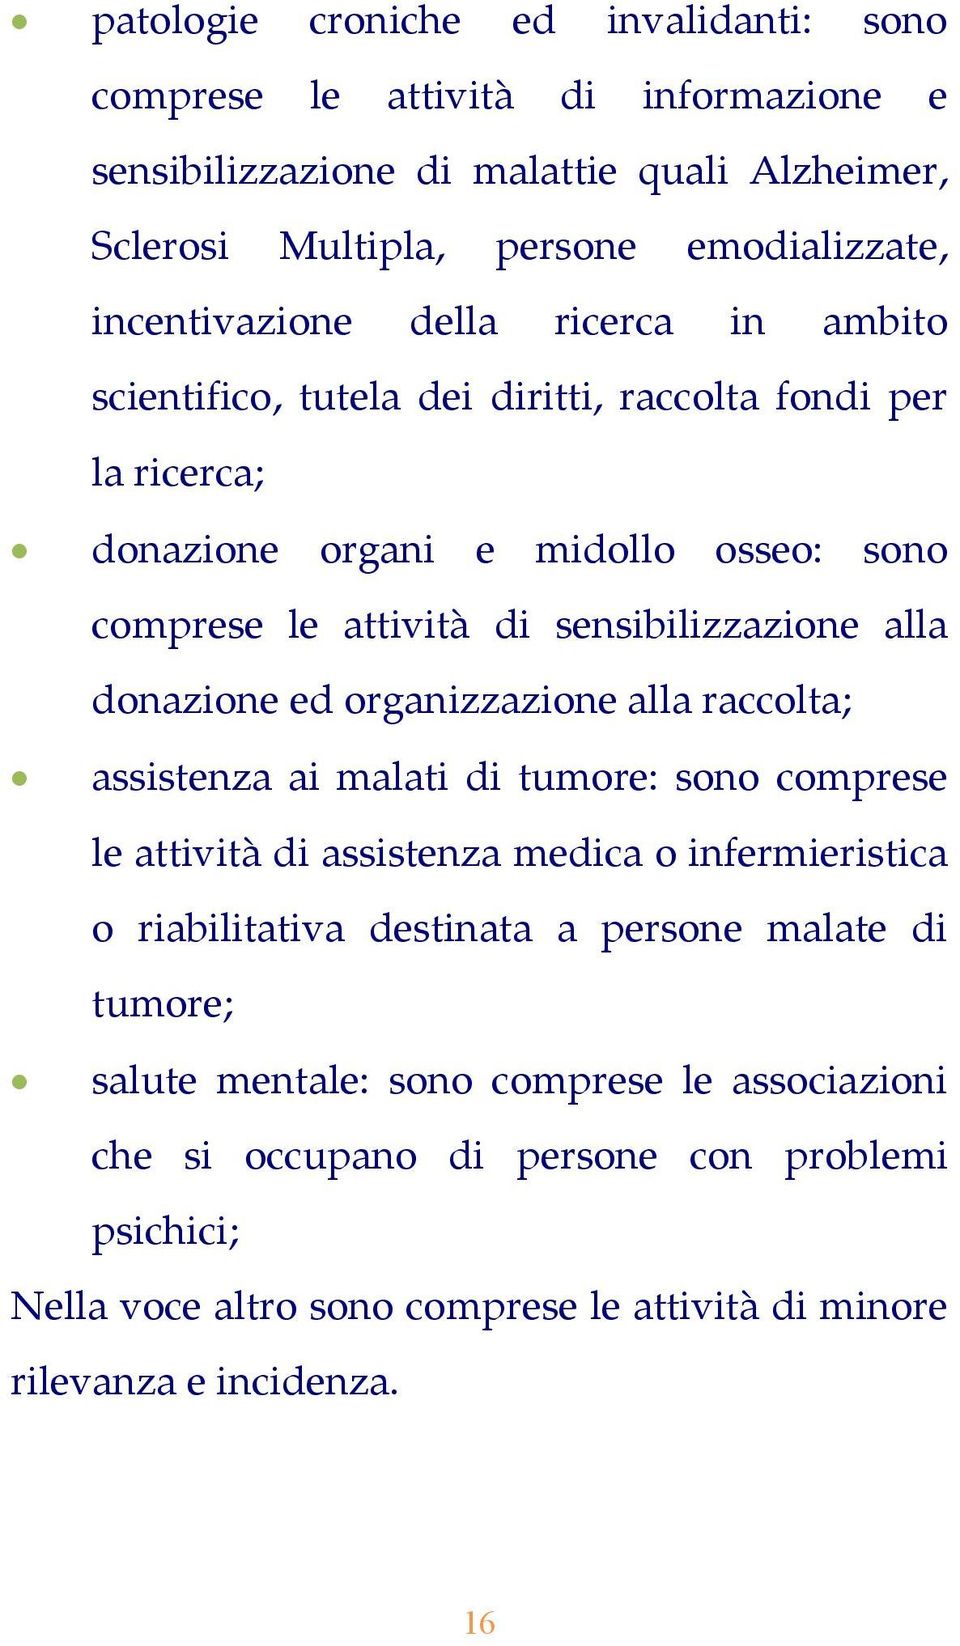 sensibilizzazione alla donazione ed organizzazione alla raccolta; assistenza ai malati di tumore: sono comprese le attività di assistenza medica o infermieristica o riabilitativa